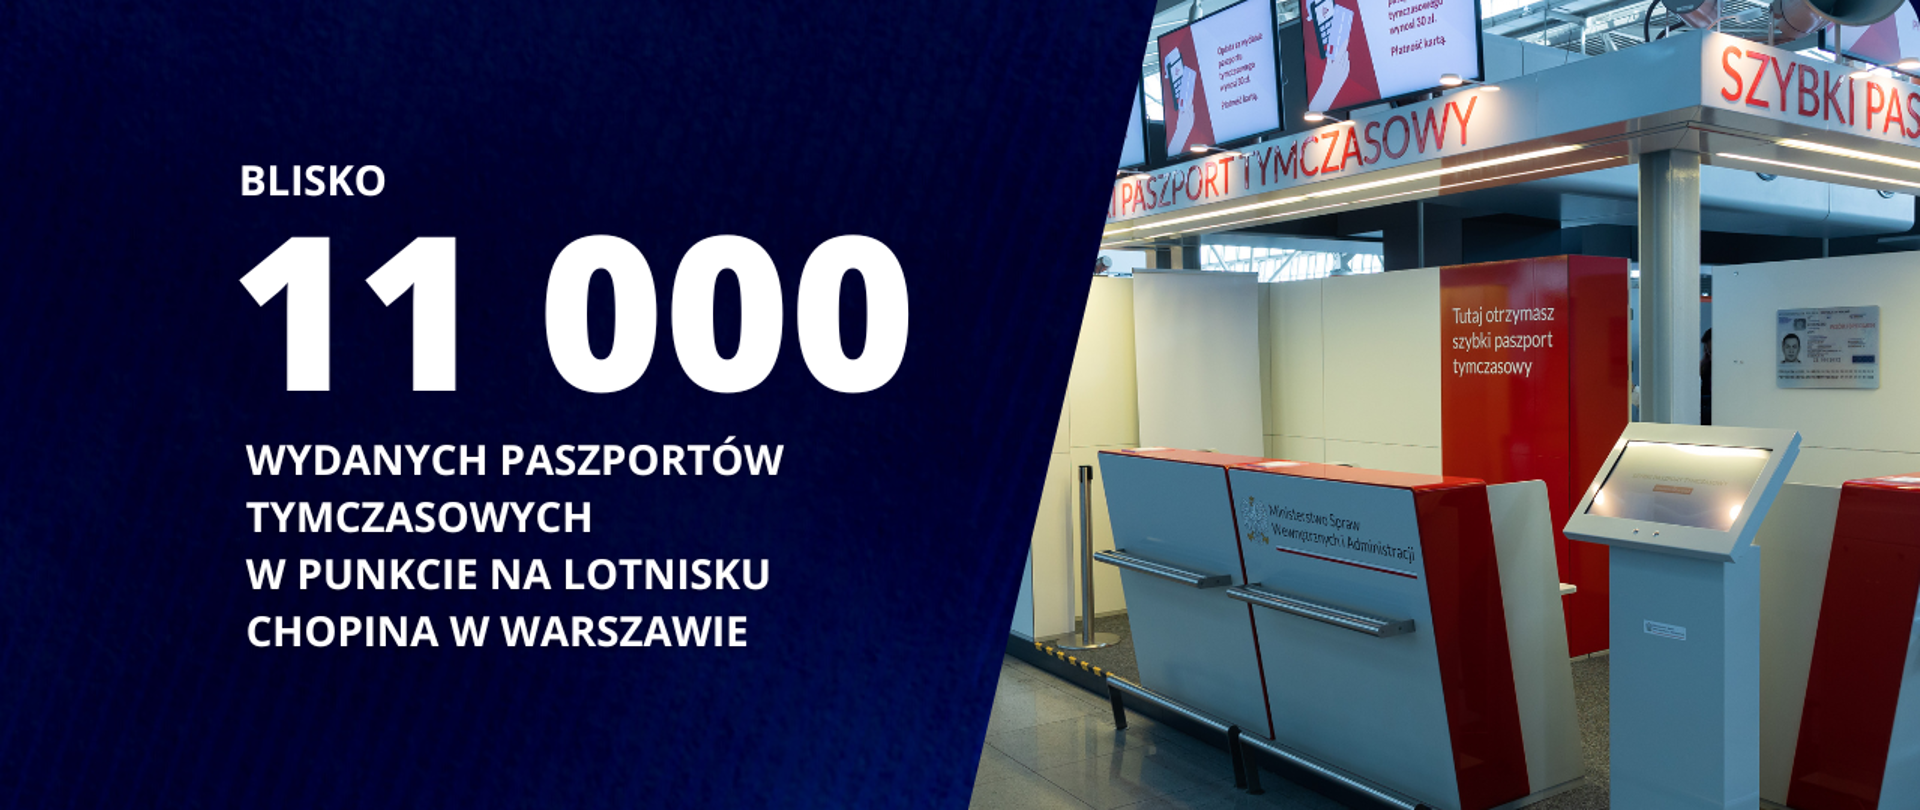 Blisko 11 000 wydanych paszportów tymczasowych w punkcie na Lotnisku Chopina w Warszawie